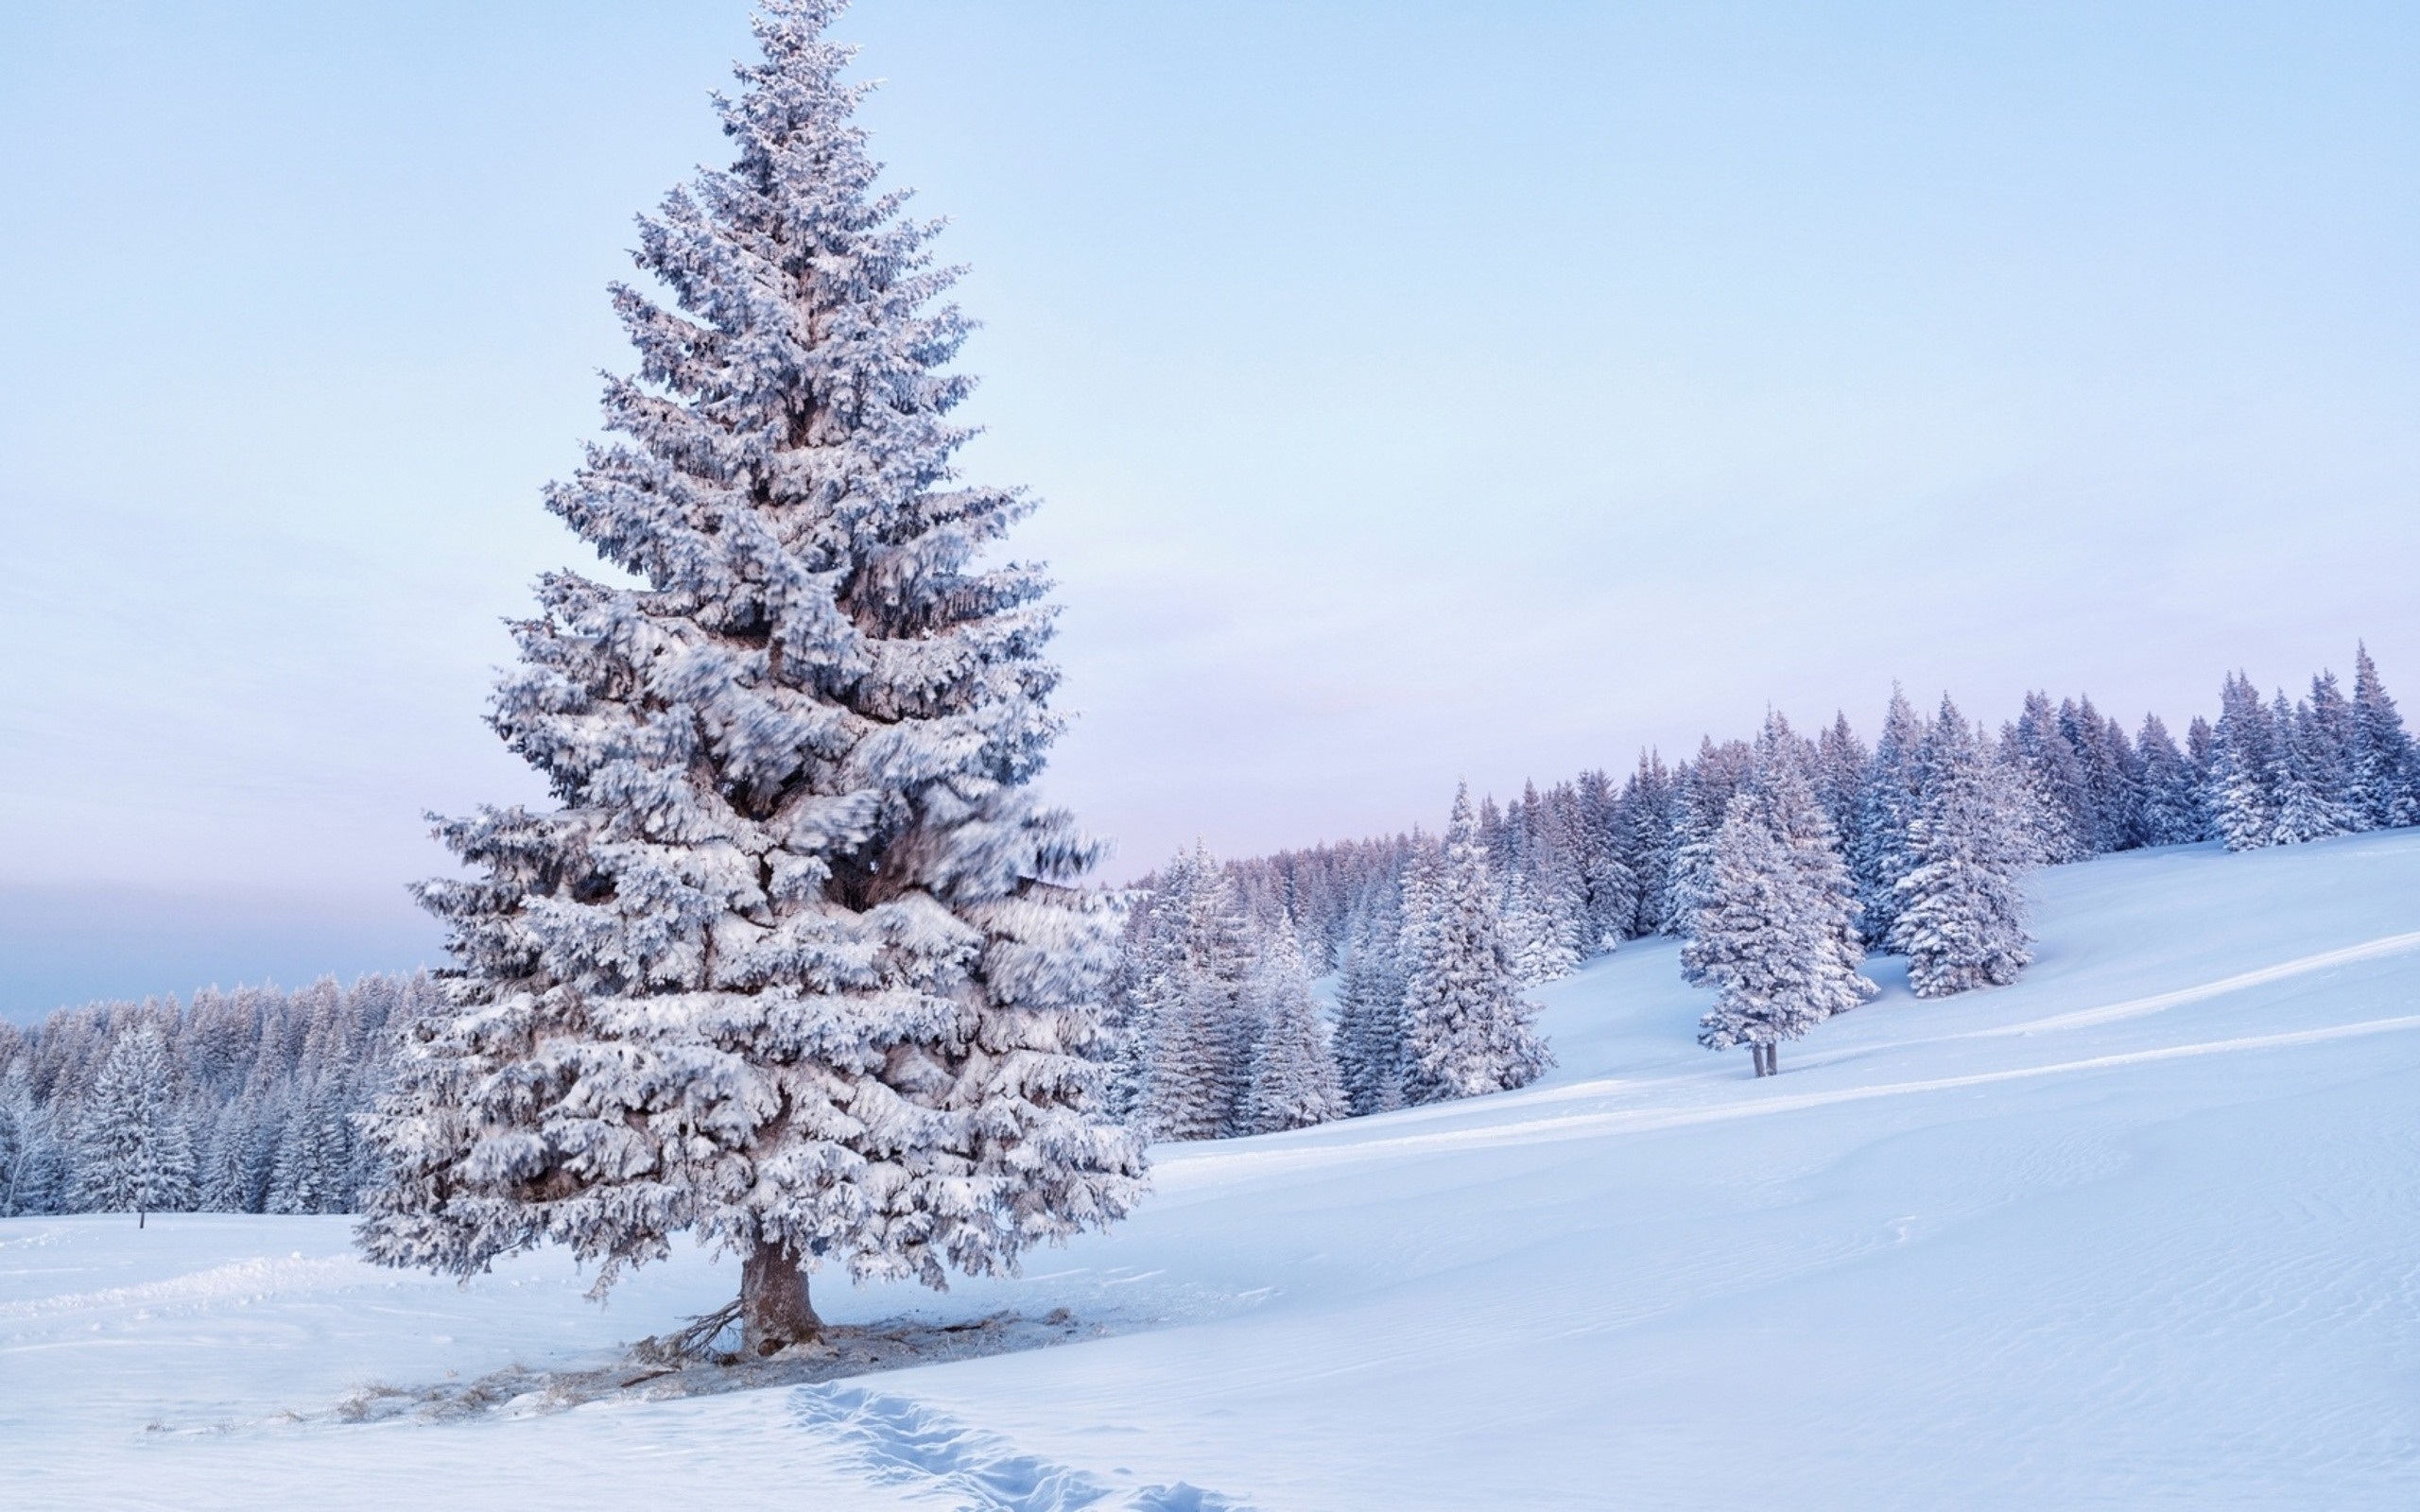 fond d'écran d'arbre de neige,arbre,neige,épinette noire à feuilles courtes,épicéa du colorado,hiver